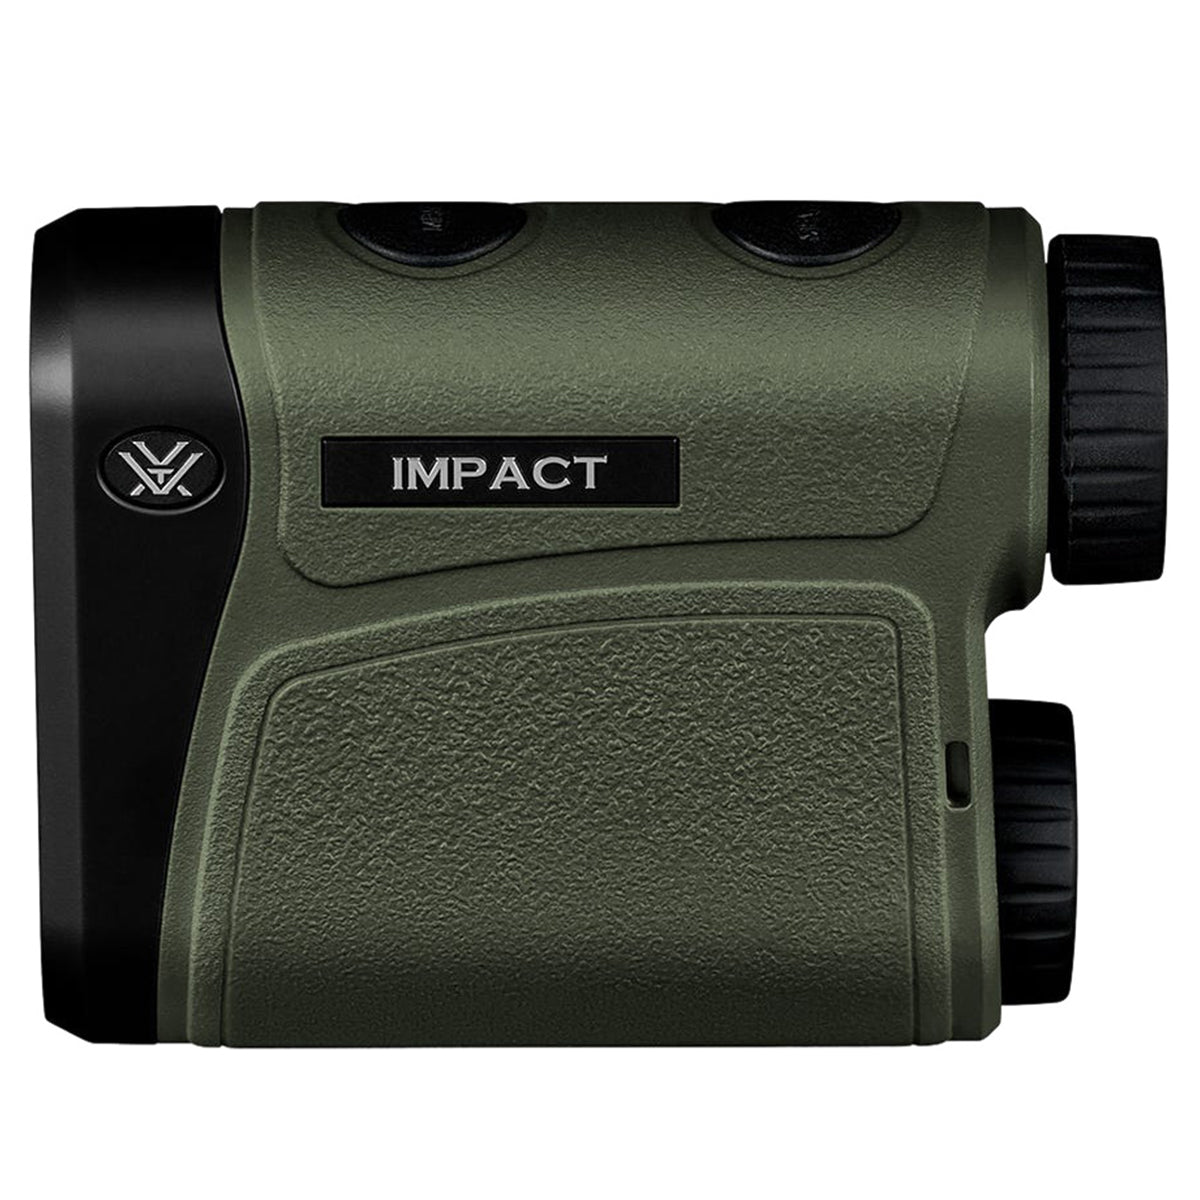 Vortex Impact 850 Rangefinder by Vortex Optics | Optics - goHUNT Shop